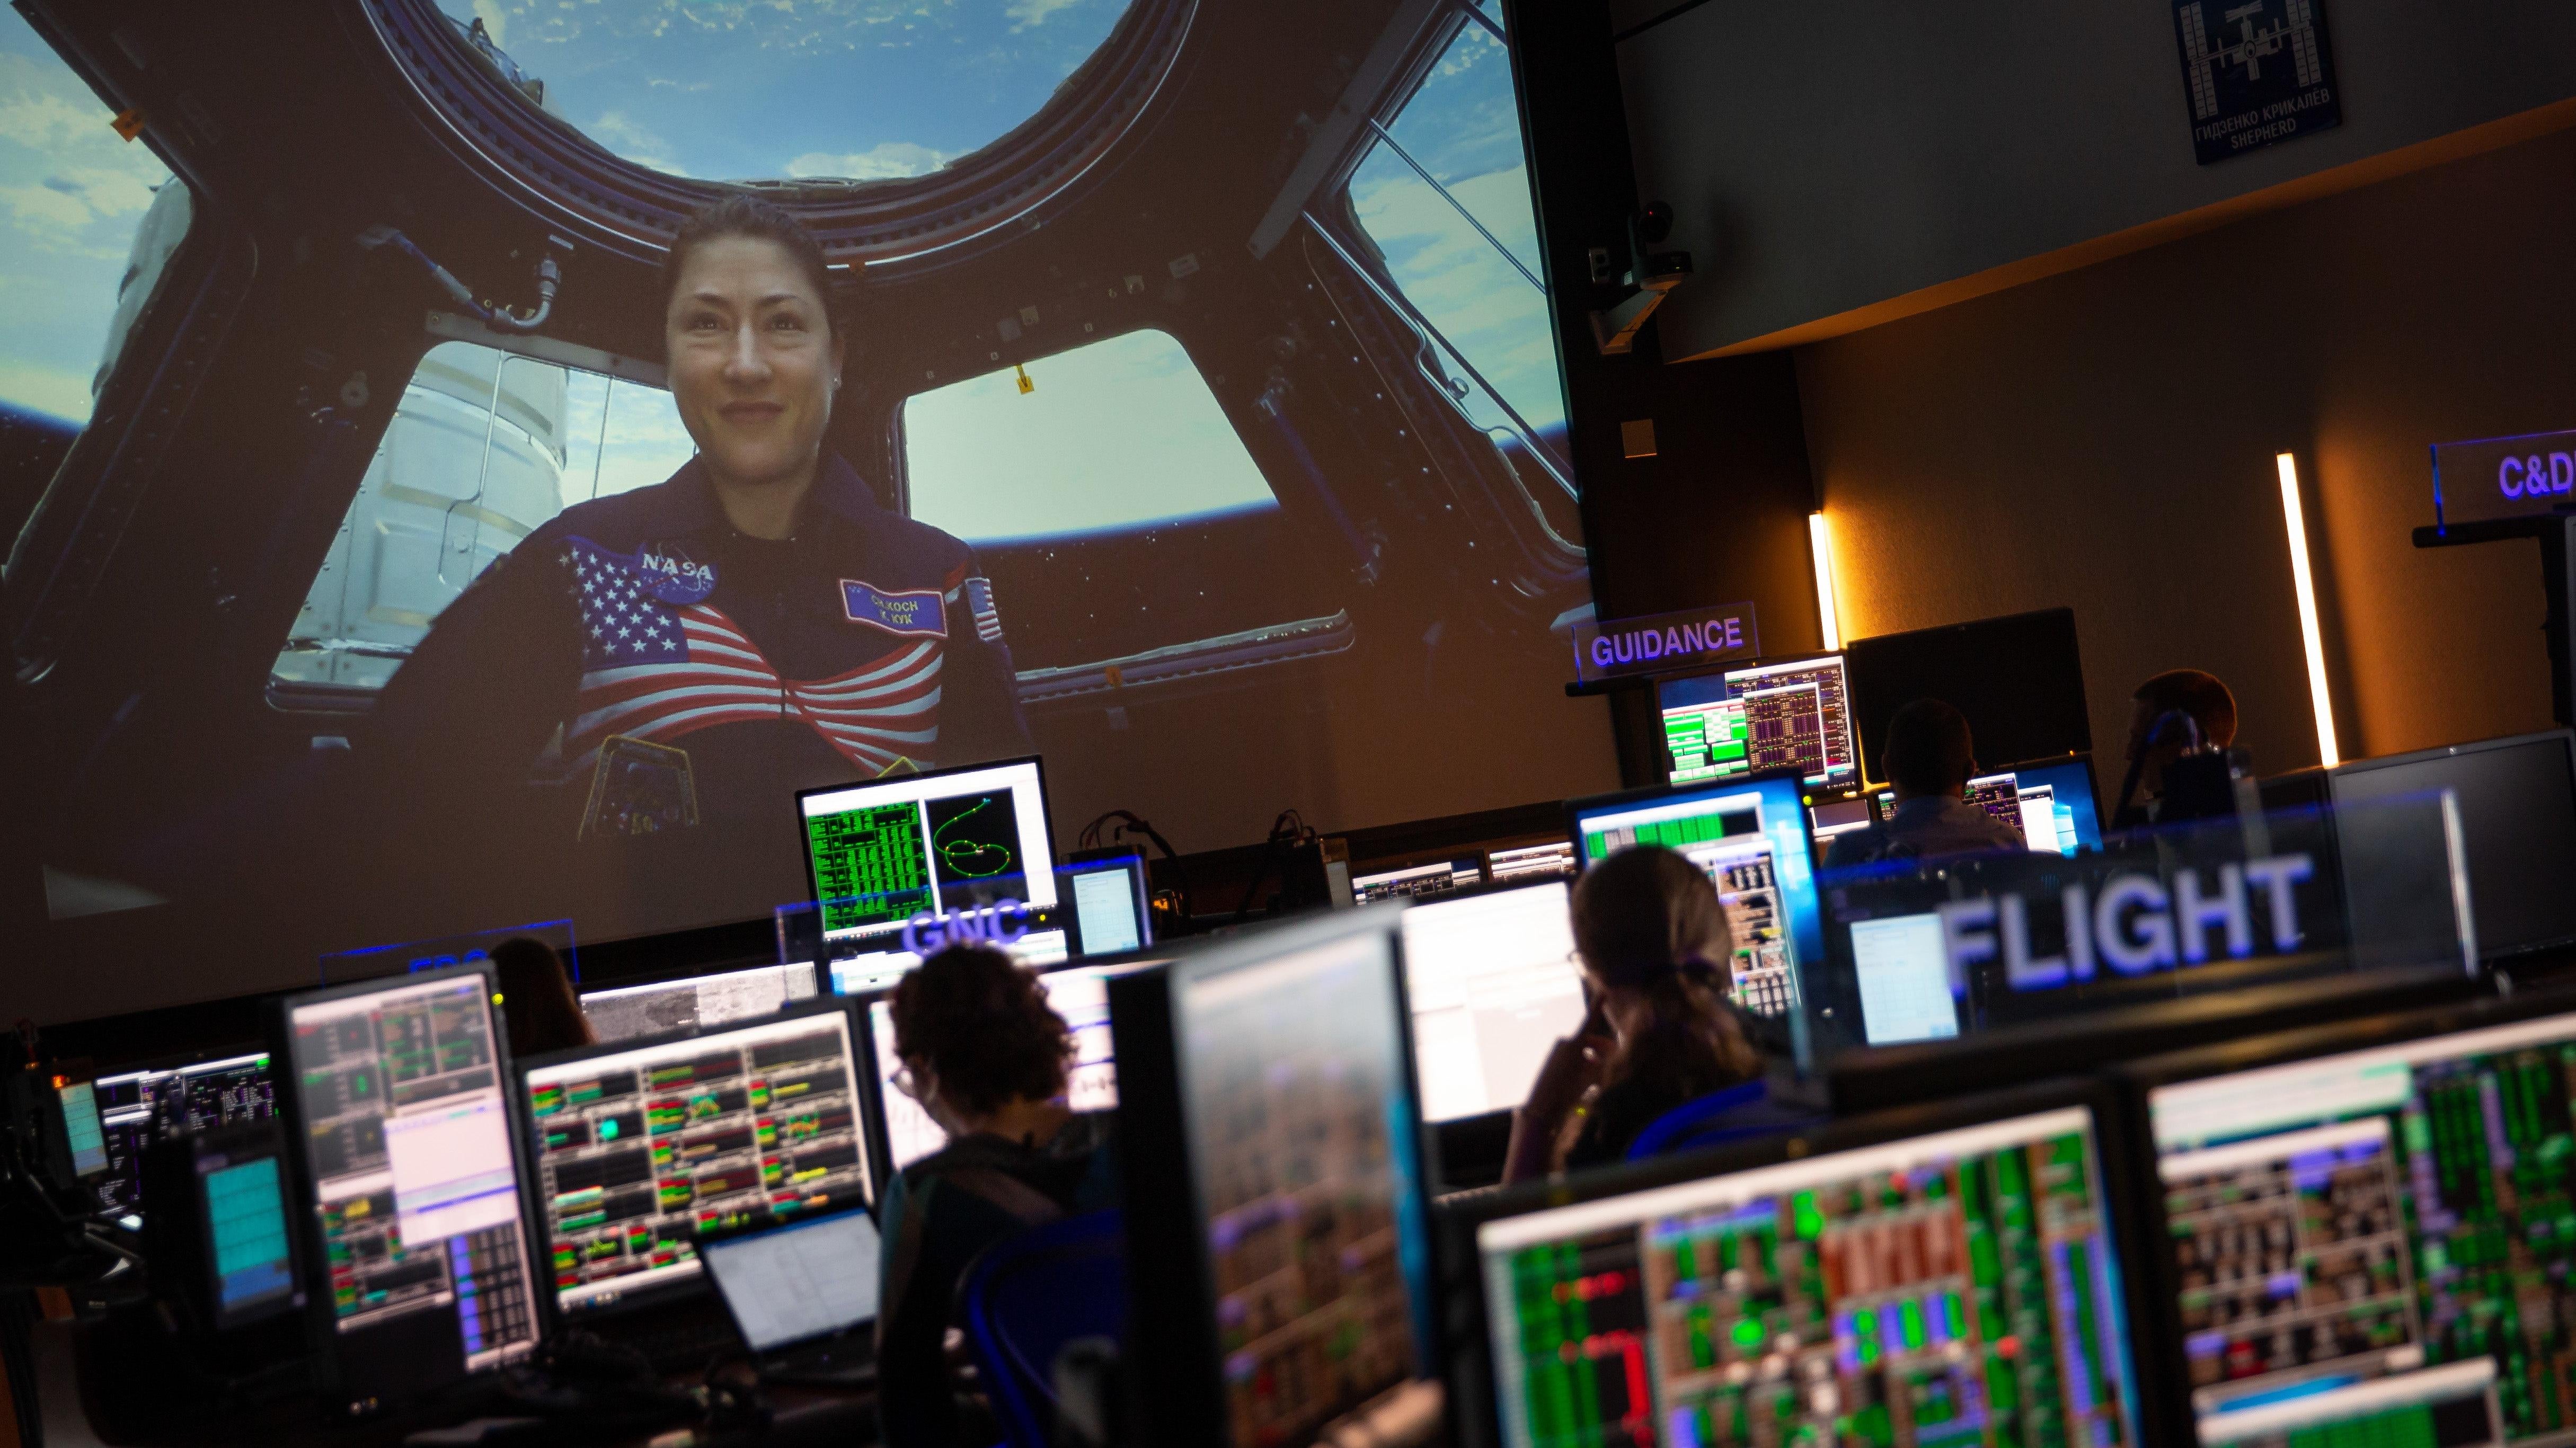 شوهد كوخ على متن محطة الفضاء الدولية من مركز جونسون للفضاء التابع لناسا في عام 2019.